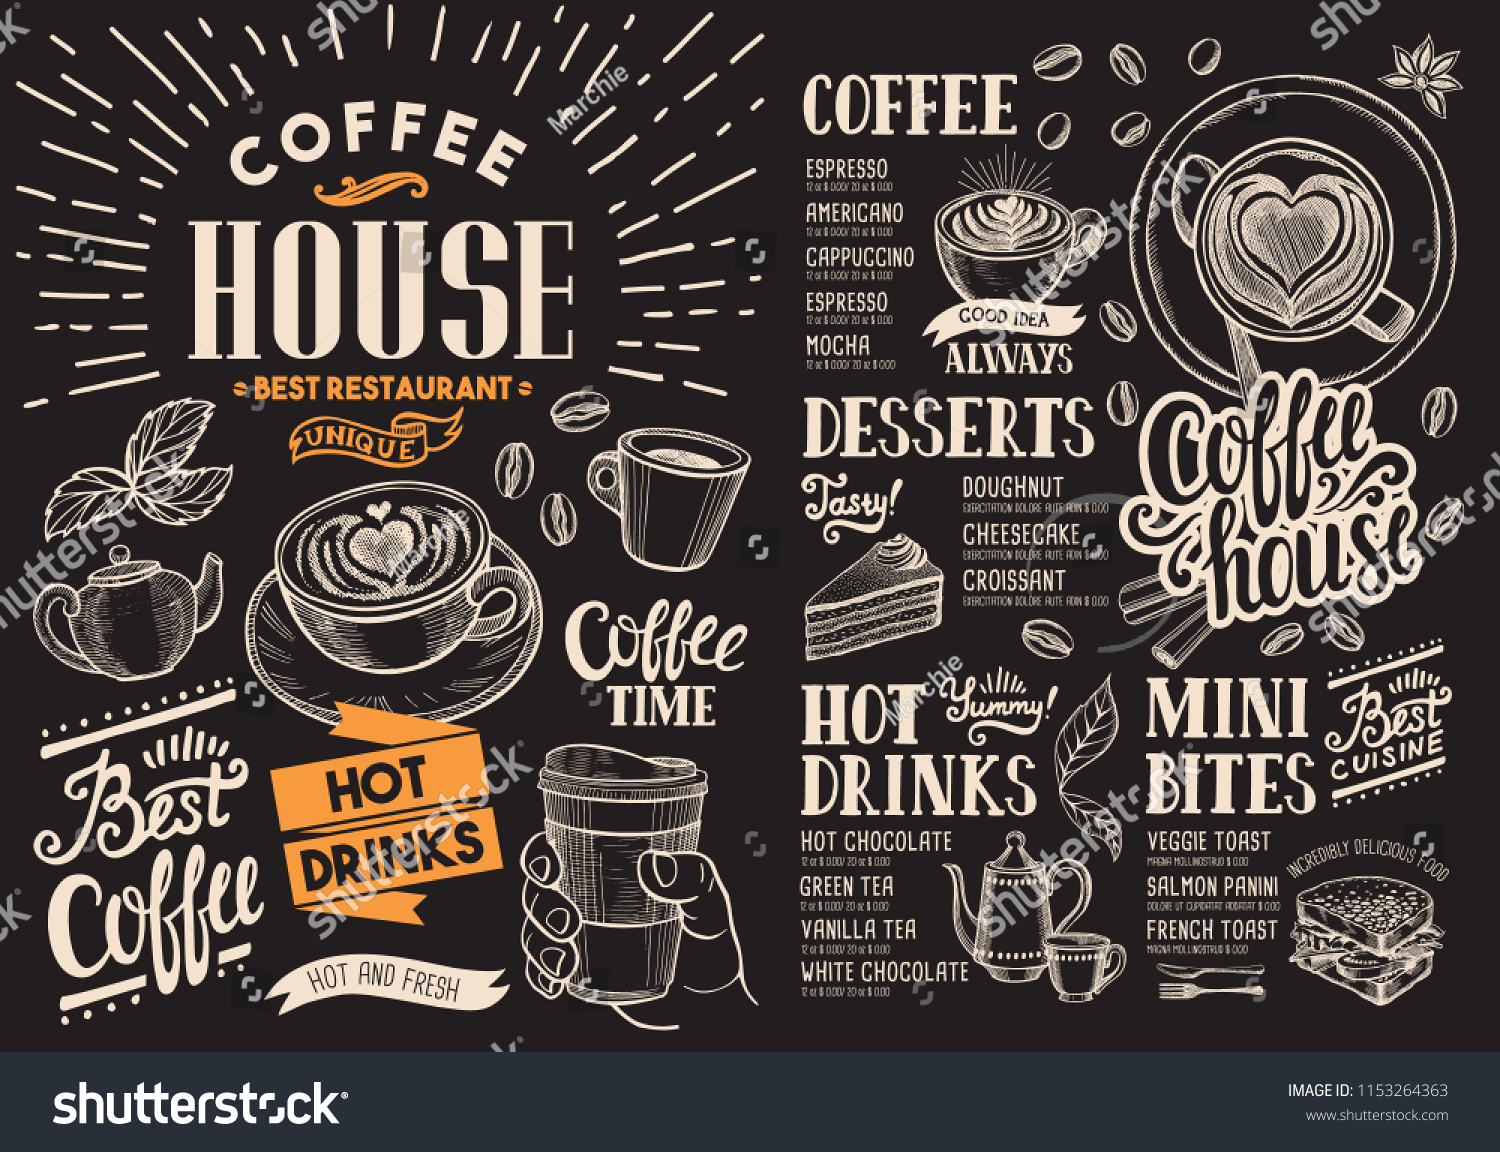 黒板の上にコーヒーレストランのメニュー バーやカフェ用のベクタードリンクフライヤー ビンテージ手描きの食べ物イラスト を使ったデザインテンプレート のベクター画像素材 ロイヤリティフリー